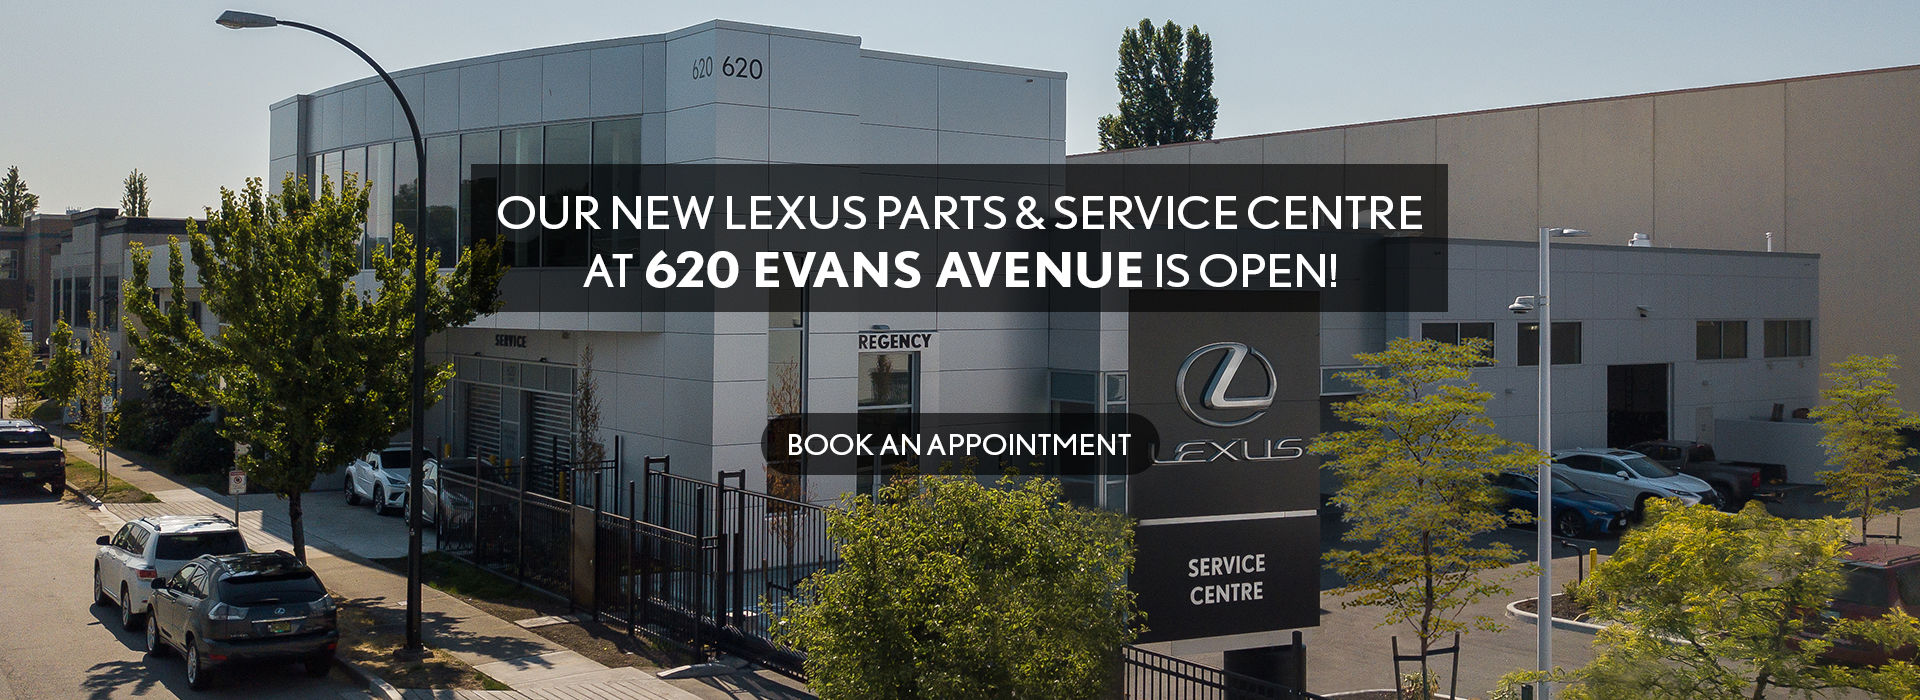 OUR NEW LEXUS PARTS & SERVICE CENTRE IS OPEN!